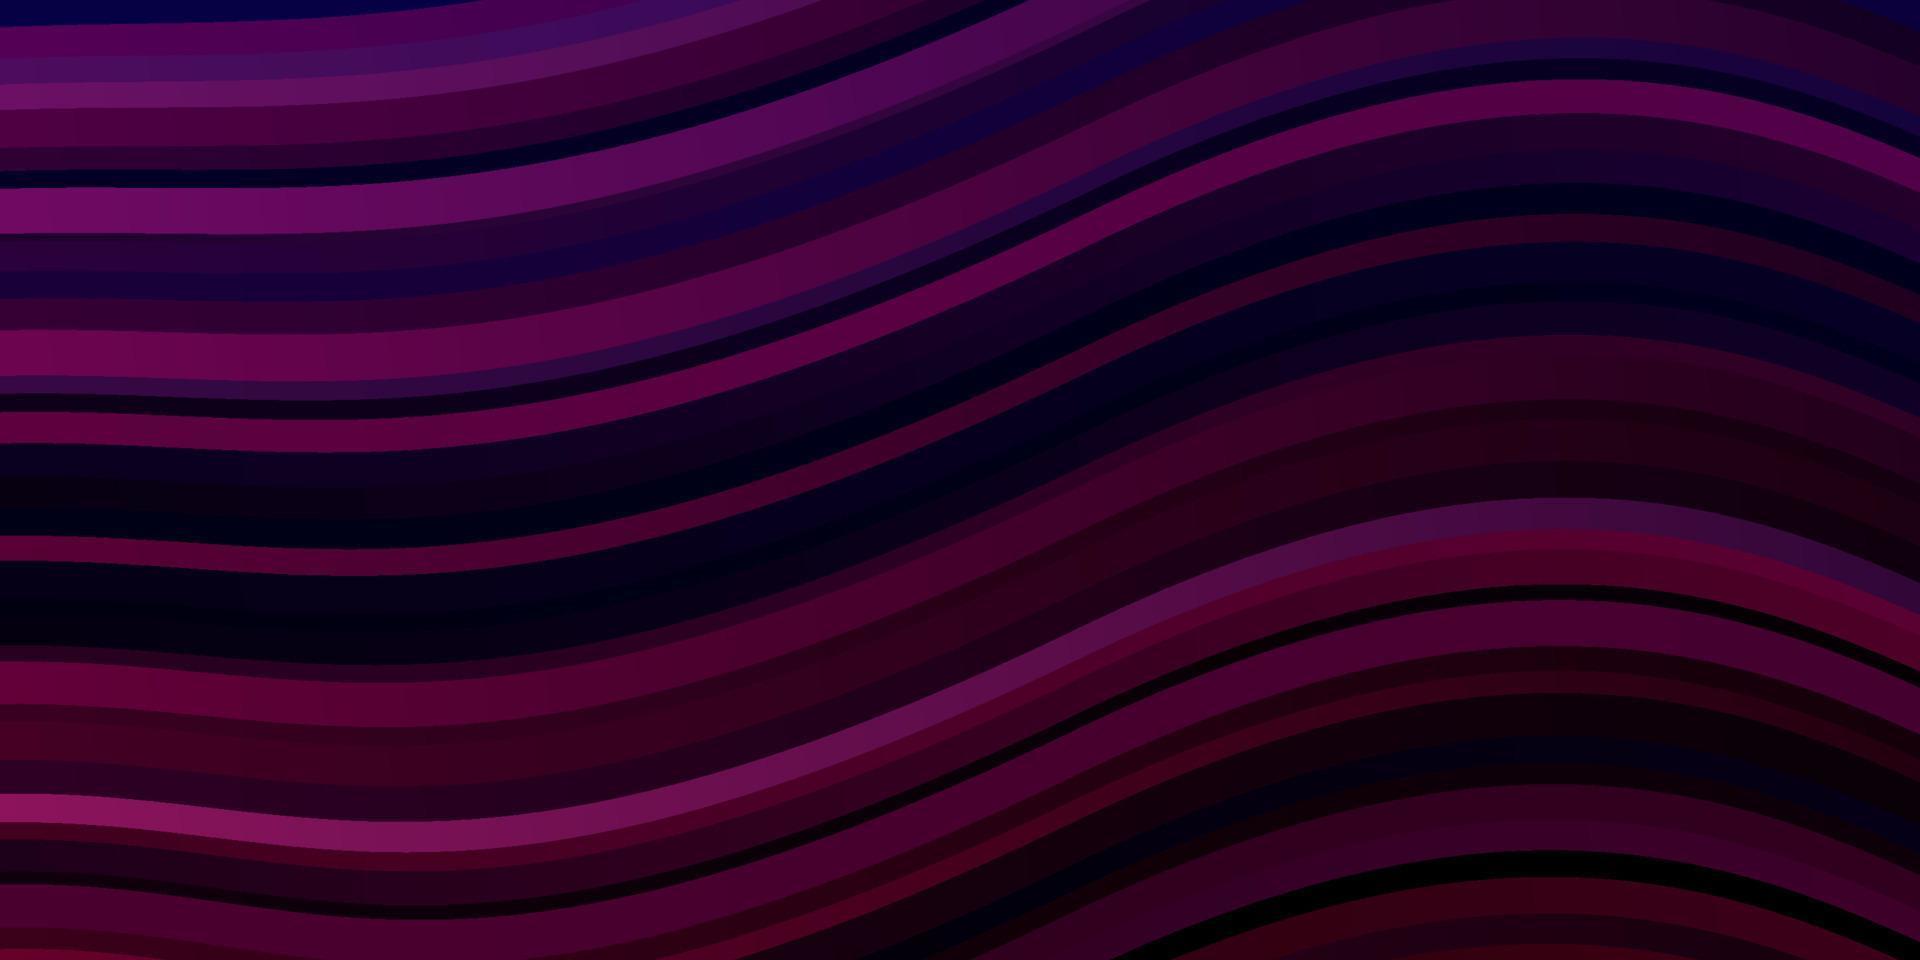 trama vettoriale viola scuro con arco circolare.